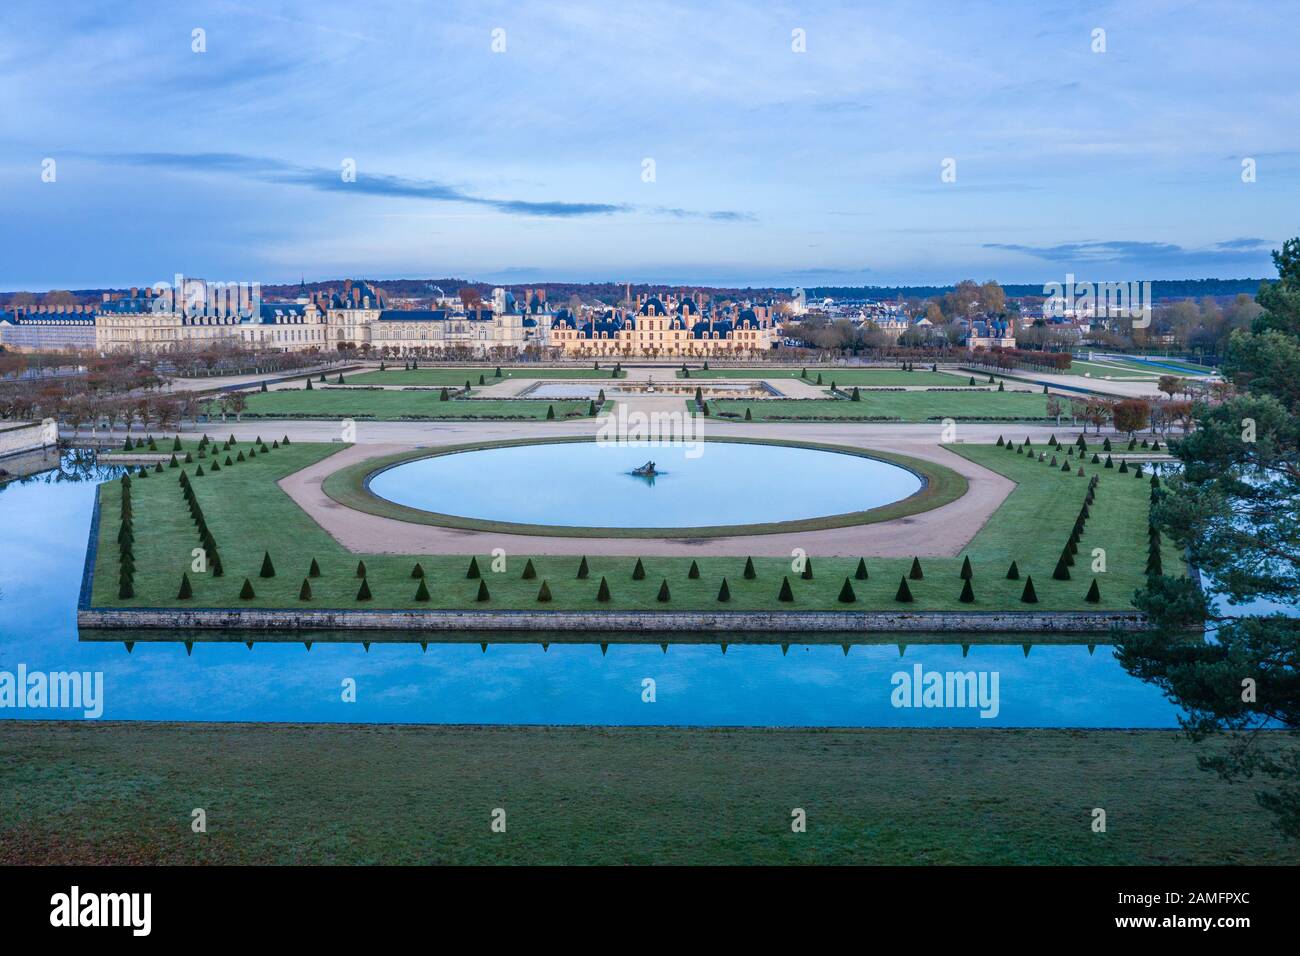 Frankreich, seine et Marne, Fontainebleau, Park und Chateau Royal de Fontainebleau, das von der UNESCO zum Weltkulturerbe ernannt wurde, das Rond d d'eau (Luftbild) // Fraa Stockfoto